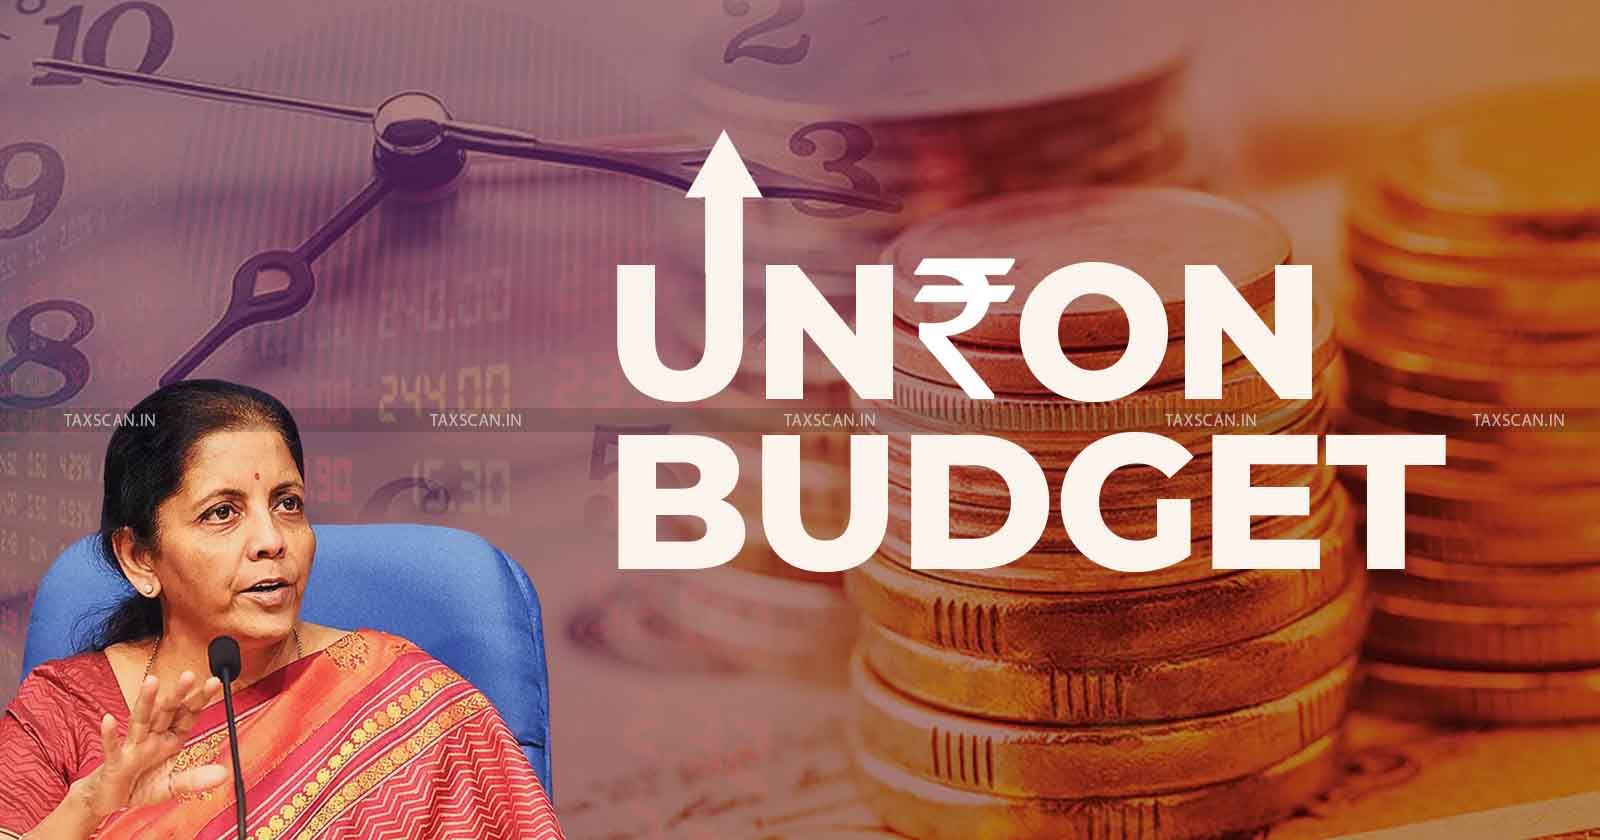 Union Budget 2023 - Budget 2023 - Union Budget - Income Tax Exemption - Income Tax - Tax - budget 2023 - budget 2023 live - taxscan